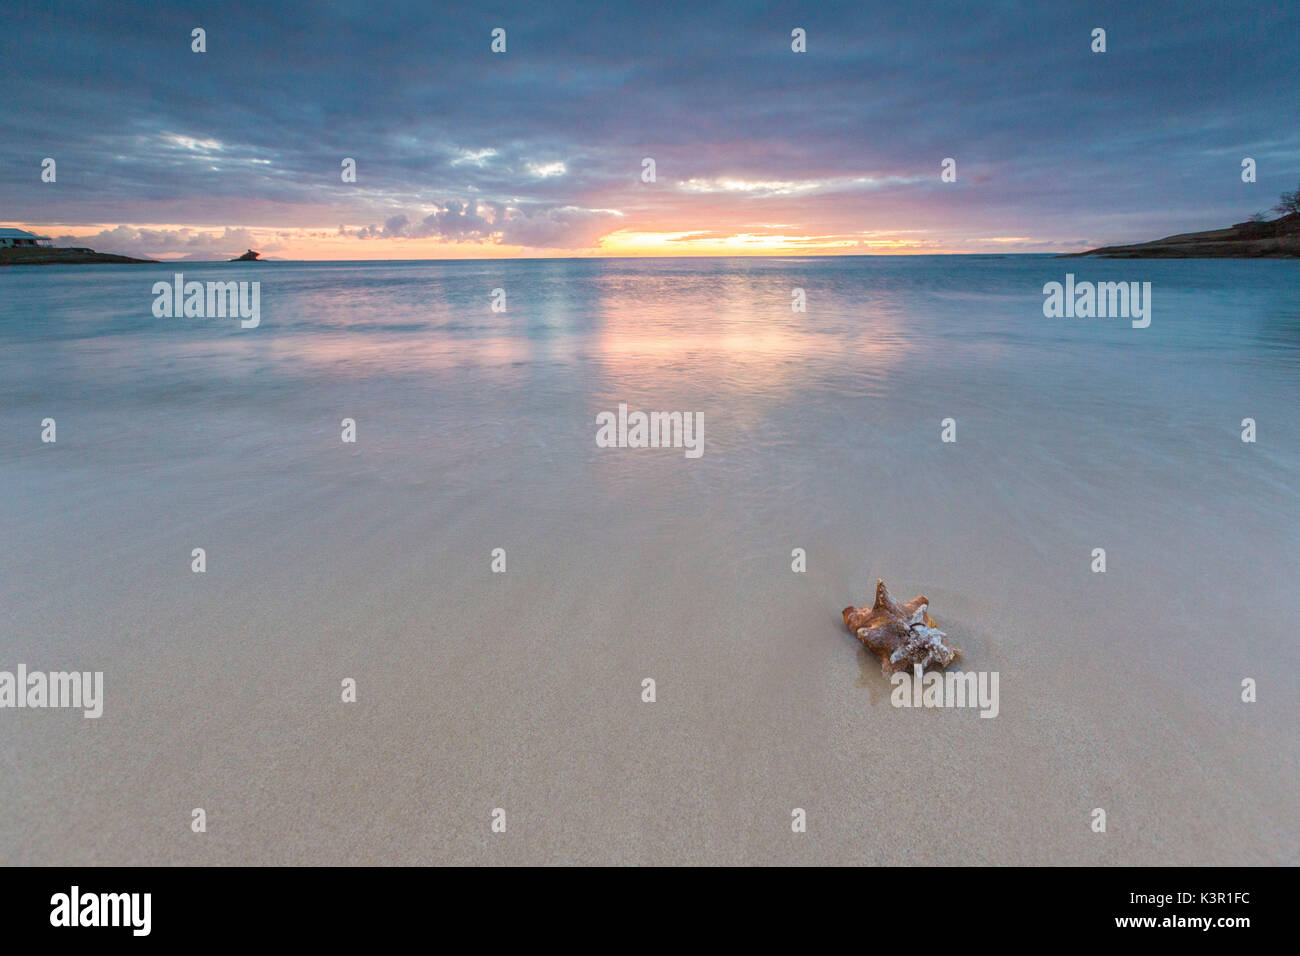 Un coquillage sur le sable encadrées par les couleurs des Caraïbes d'Eretmochelys imbricata Sunset Bay Antigua-et-Barbuda Antilles Îles sous le vent Banque D'Images